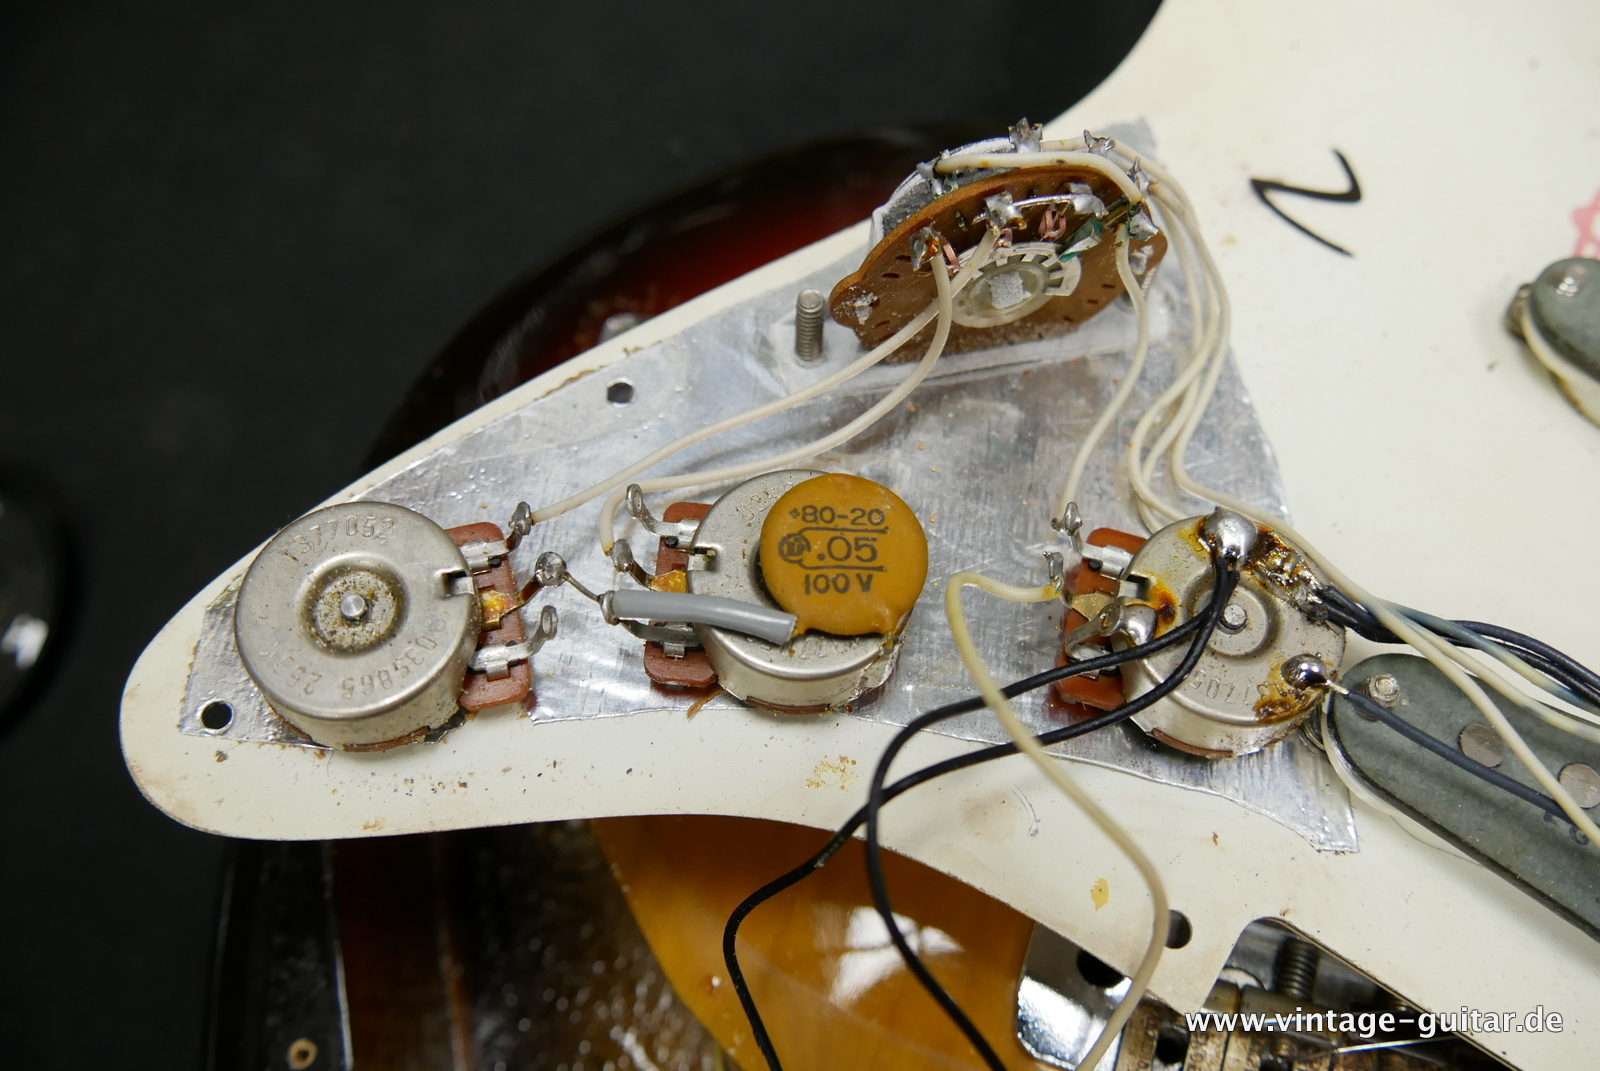 Fender-Stratocaster-1971-sunburst-4-hole-031.JPG